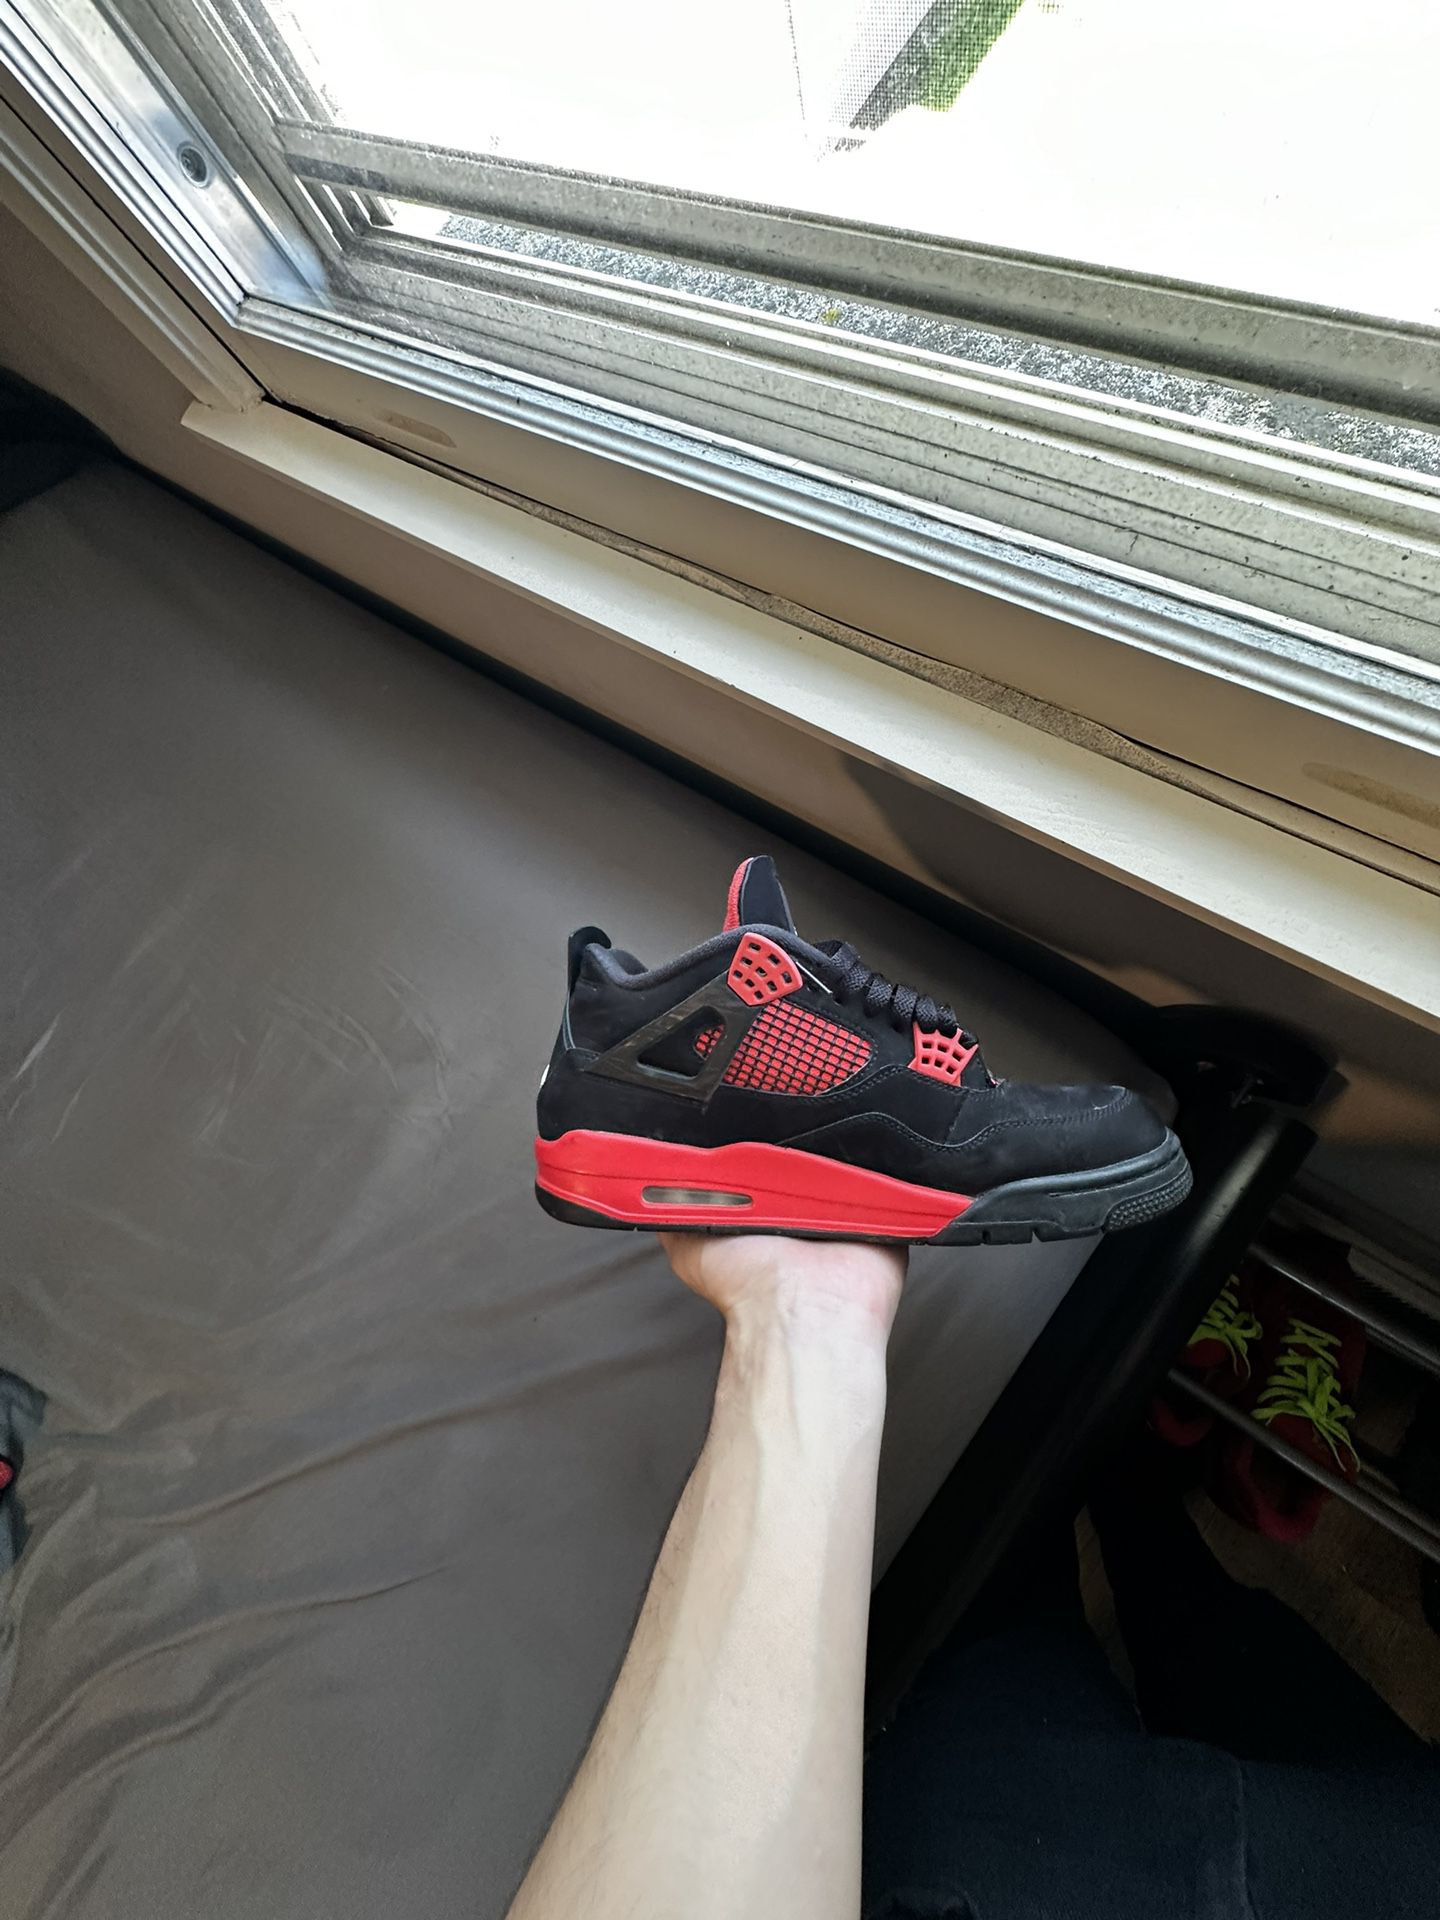 Jordan 4 Red Thunder Size 10